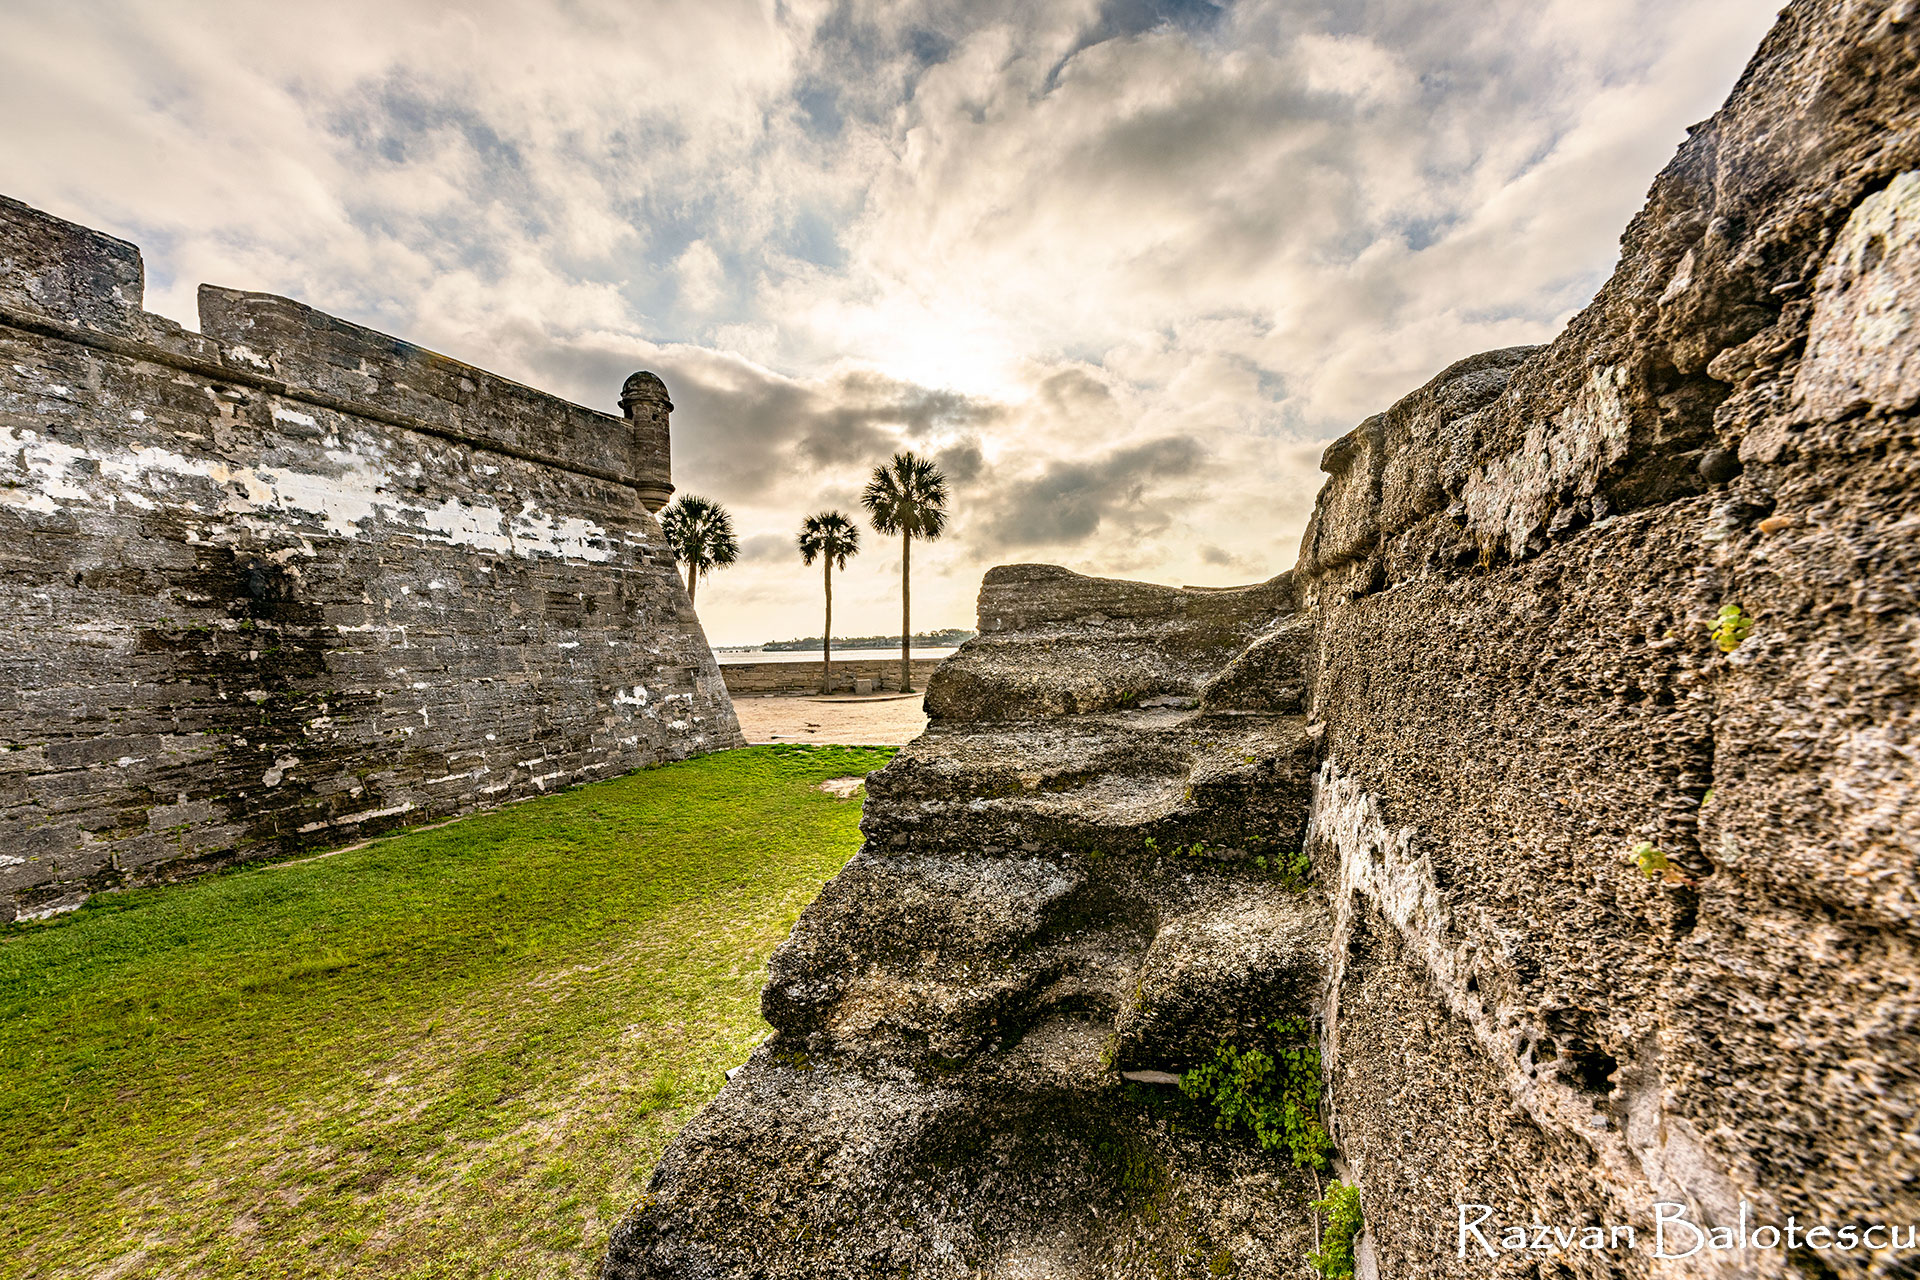 The Fortress – Castillo de San Marcos – PHOTOGRAPHY